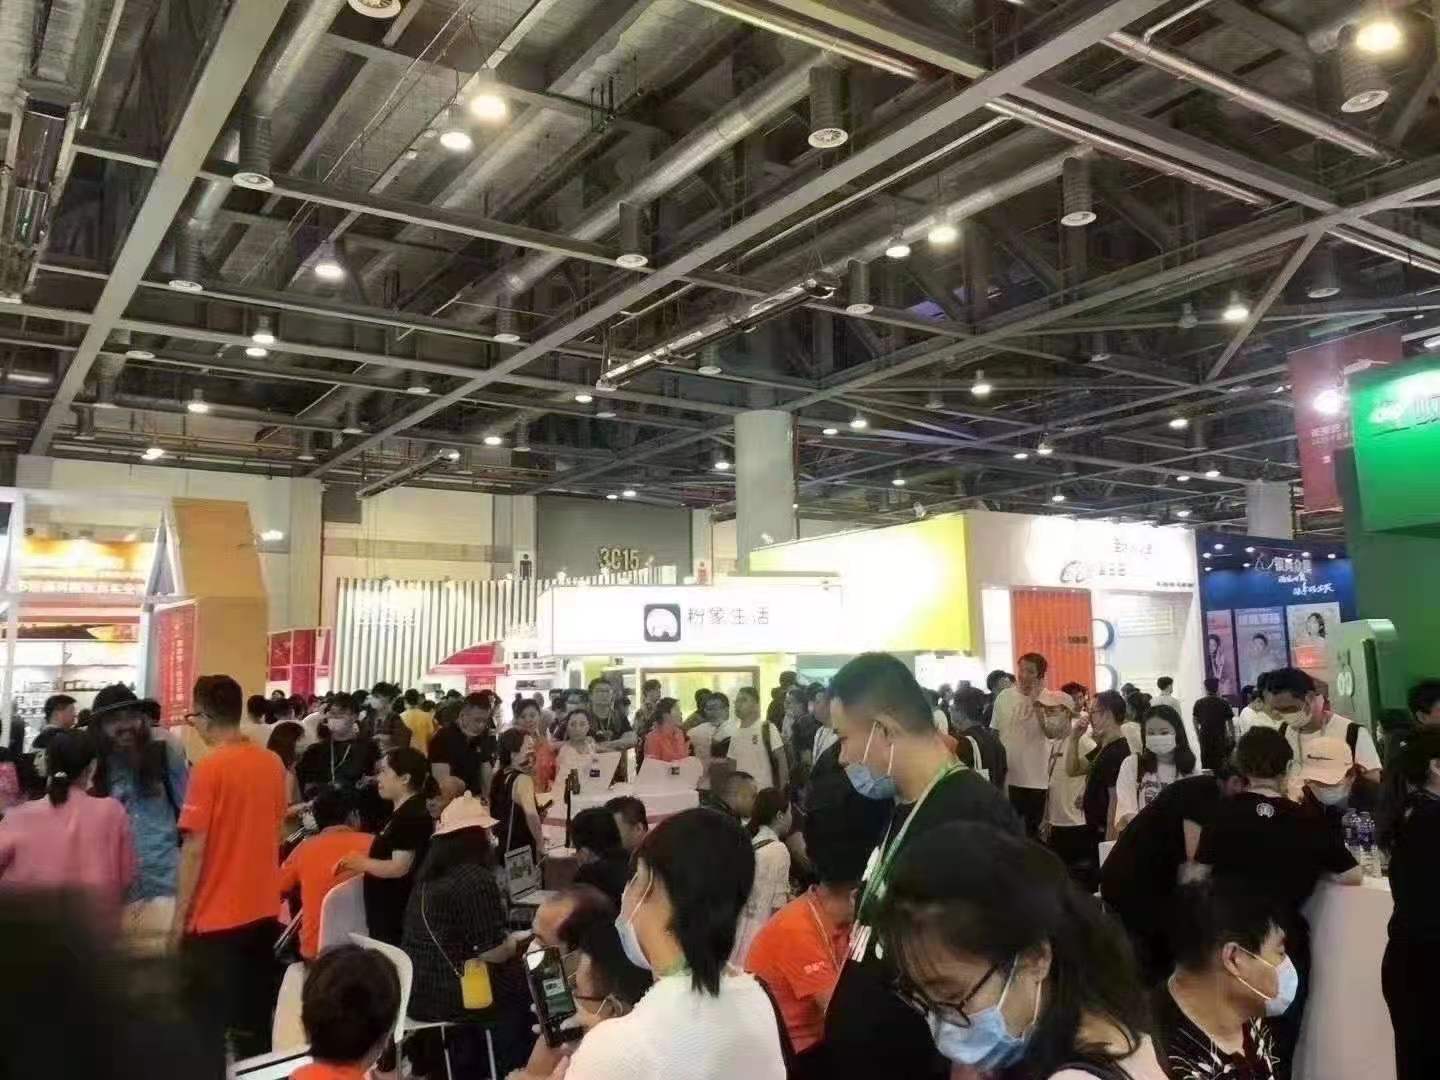 深圳2022杭州电子商务博览会联系电话